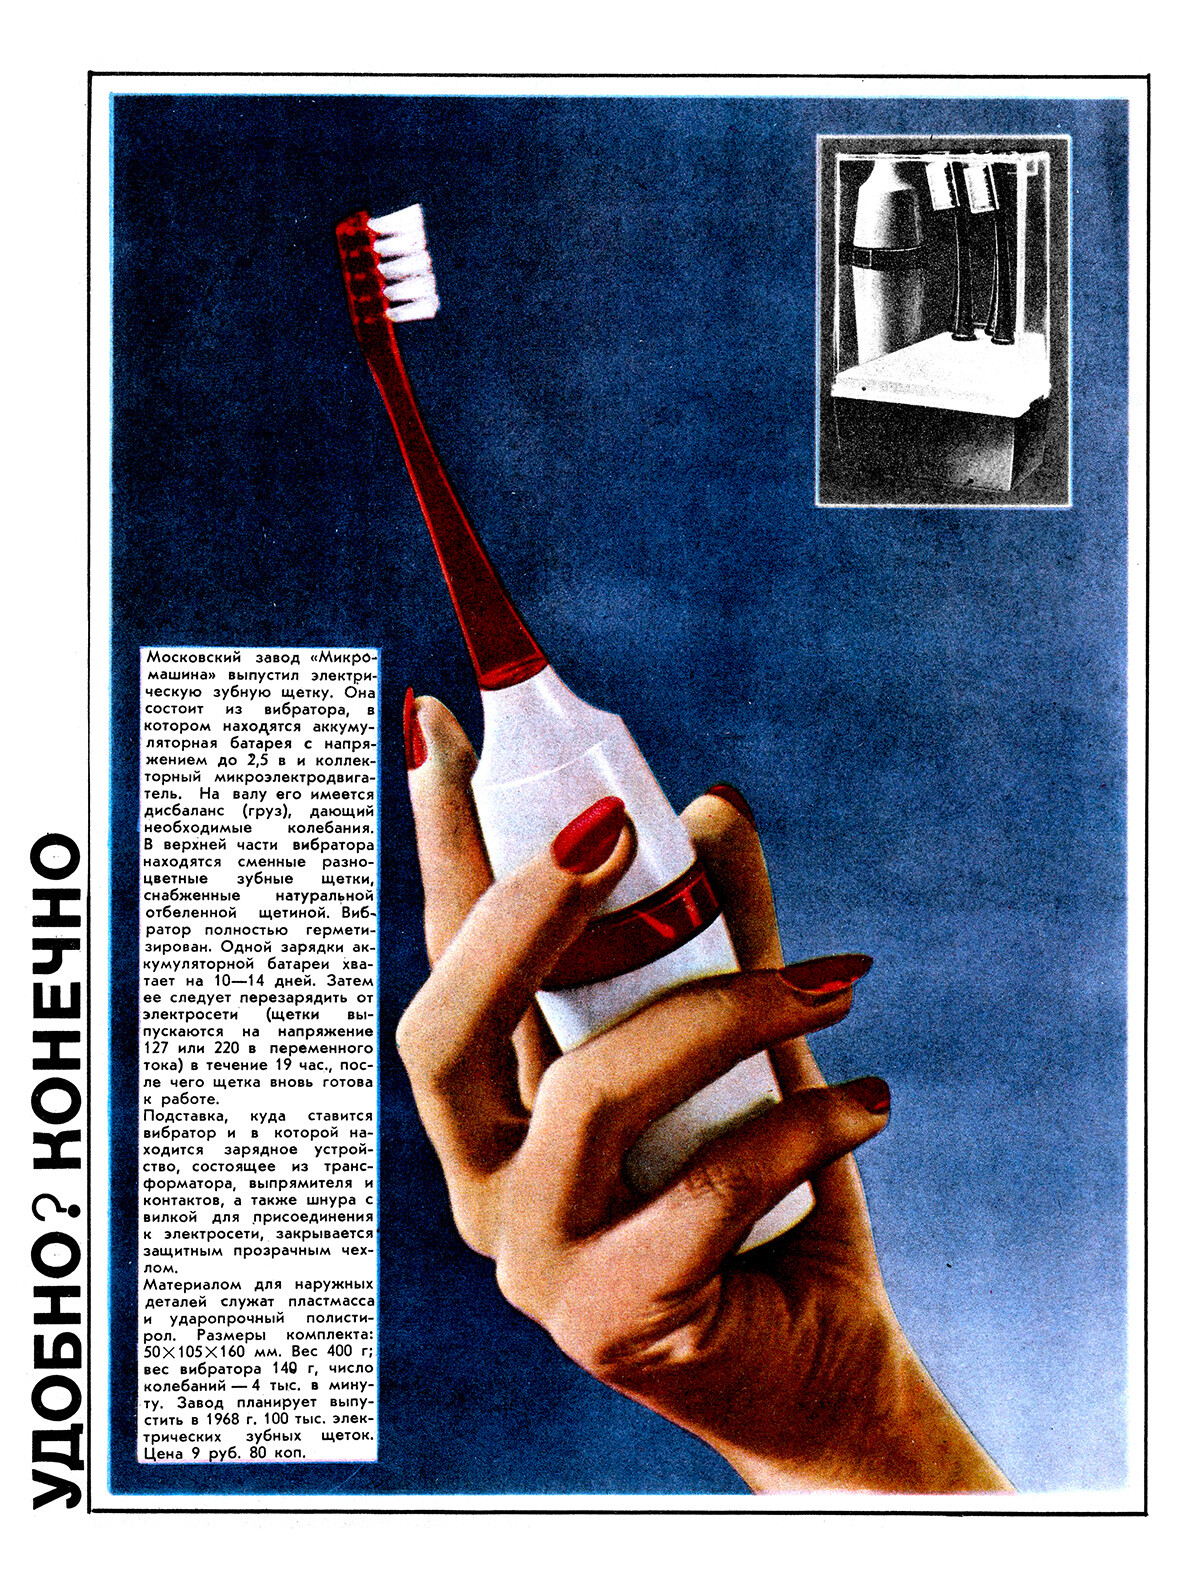 Publicité pour une brosse à dents électrique de 1968